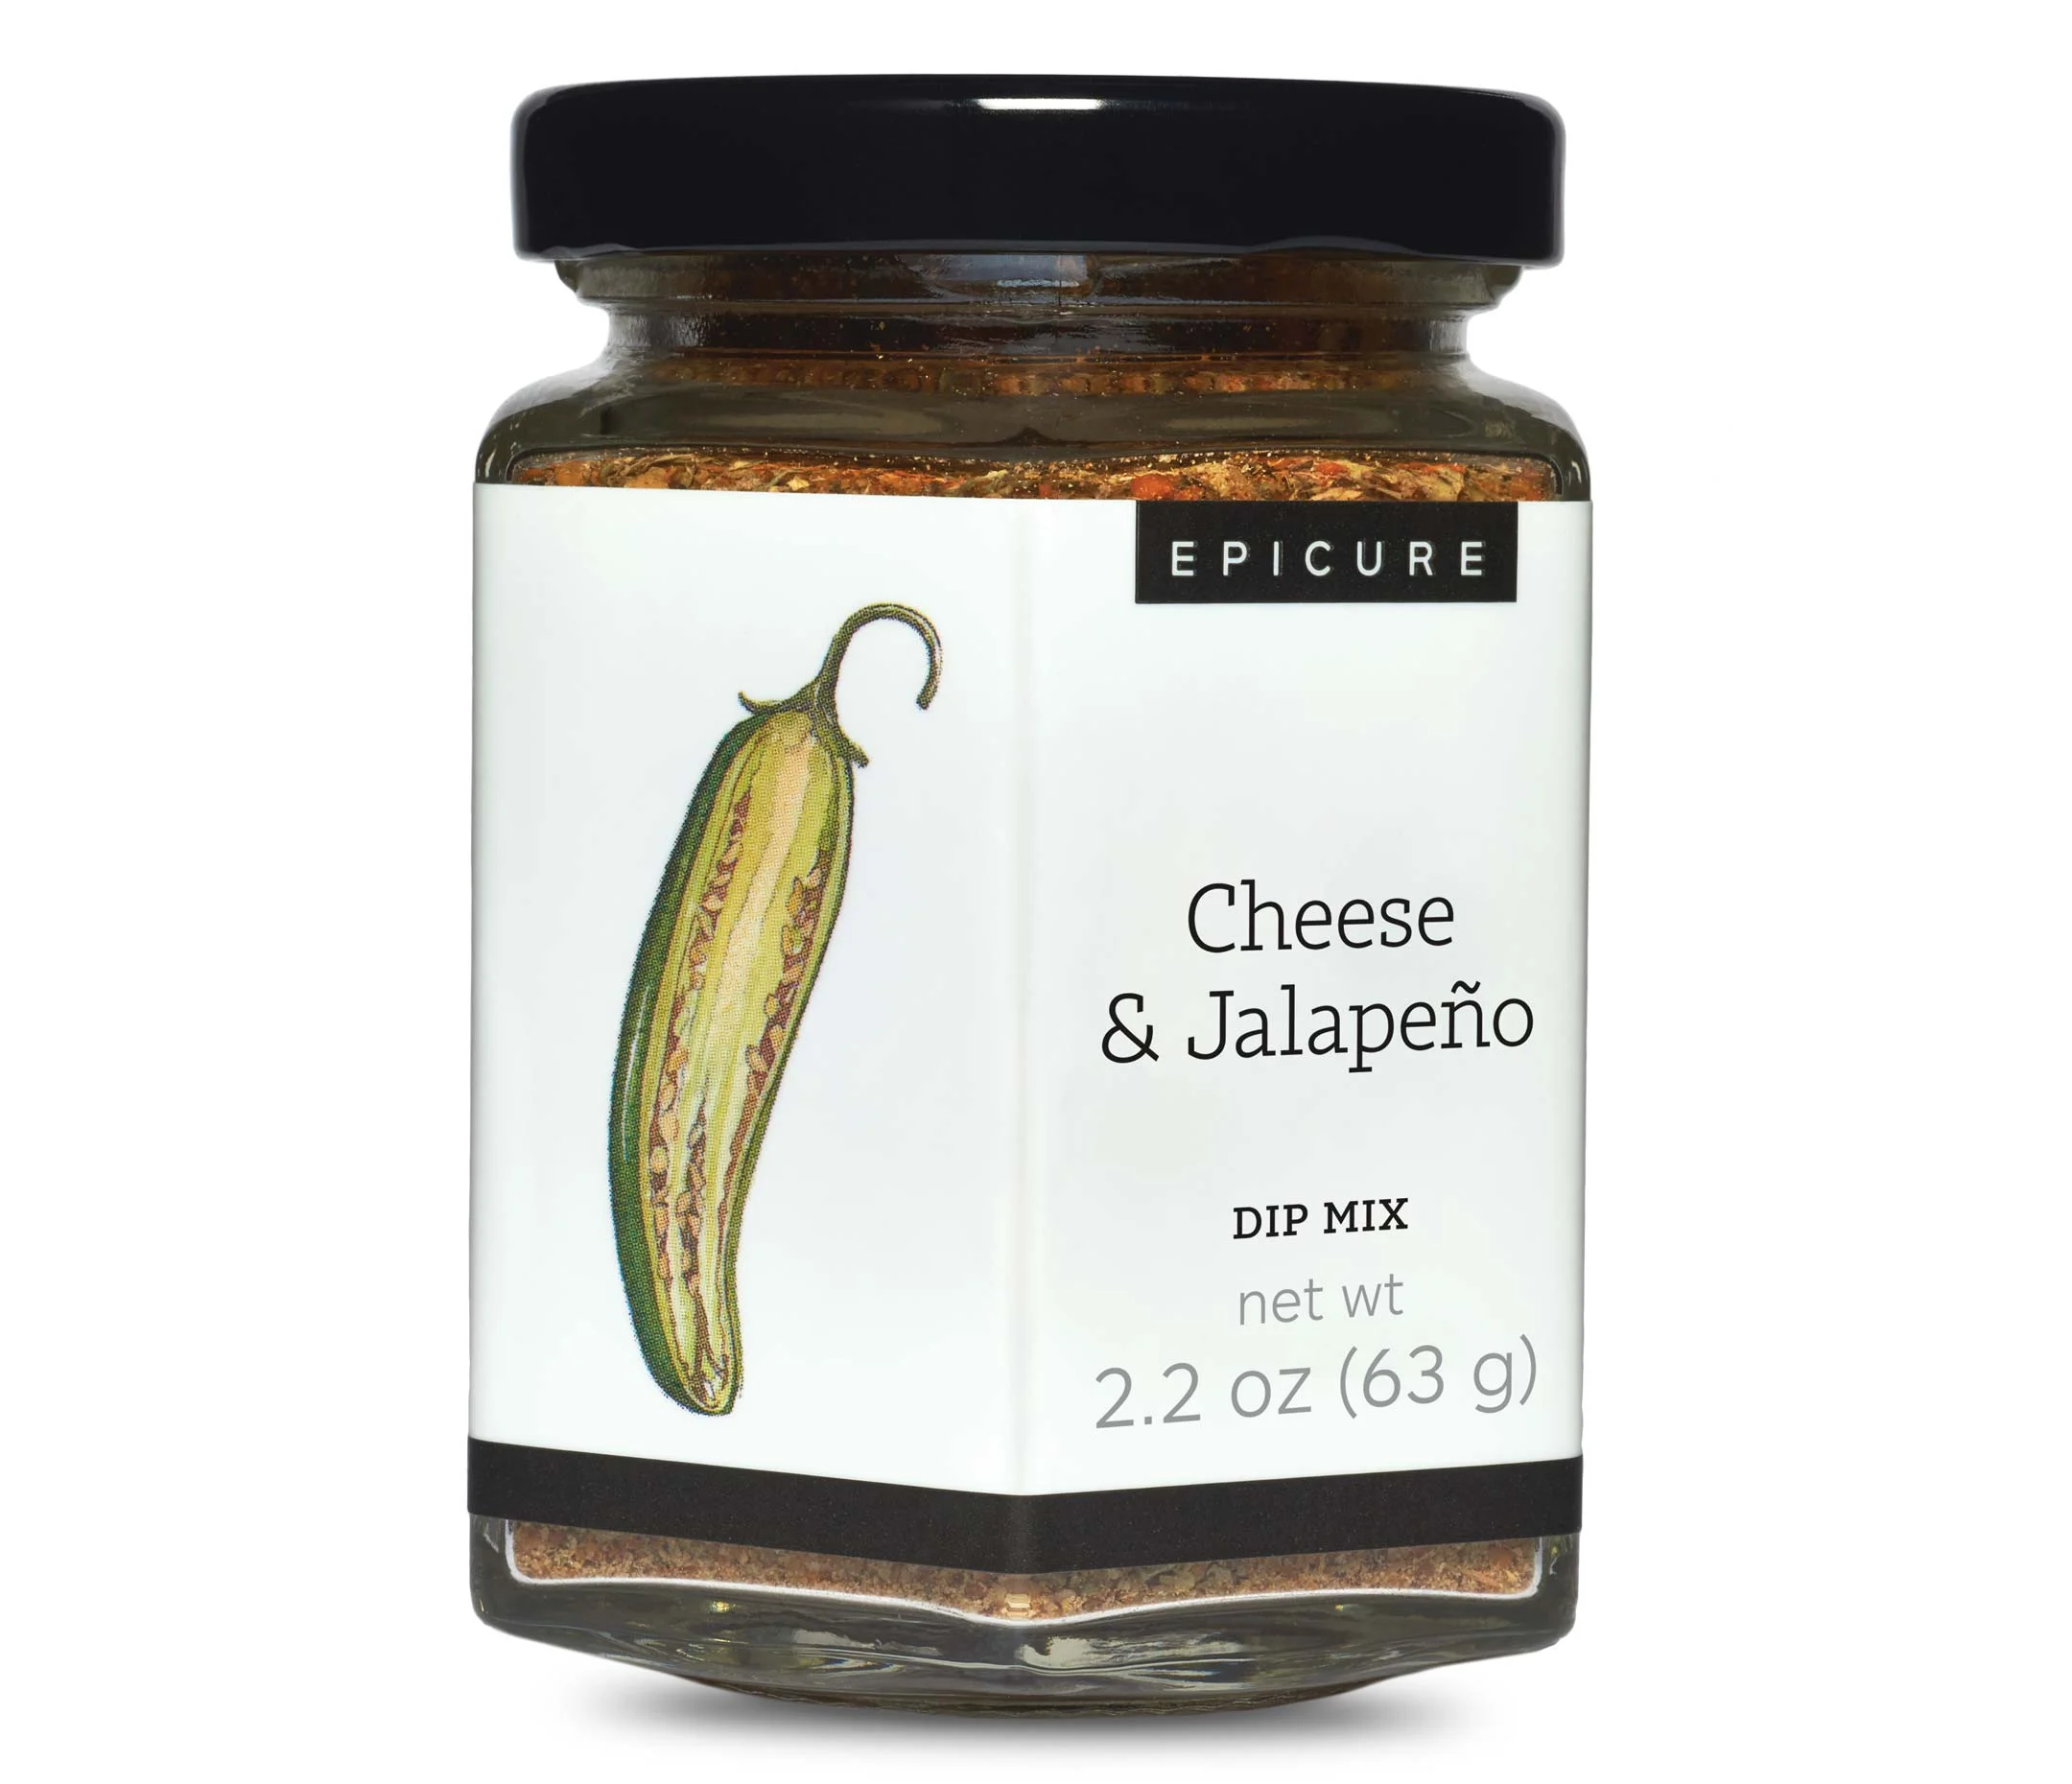 Cheese & Jalapeno Dip Mix